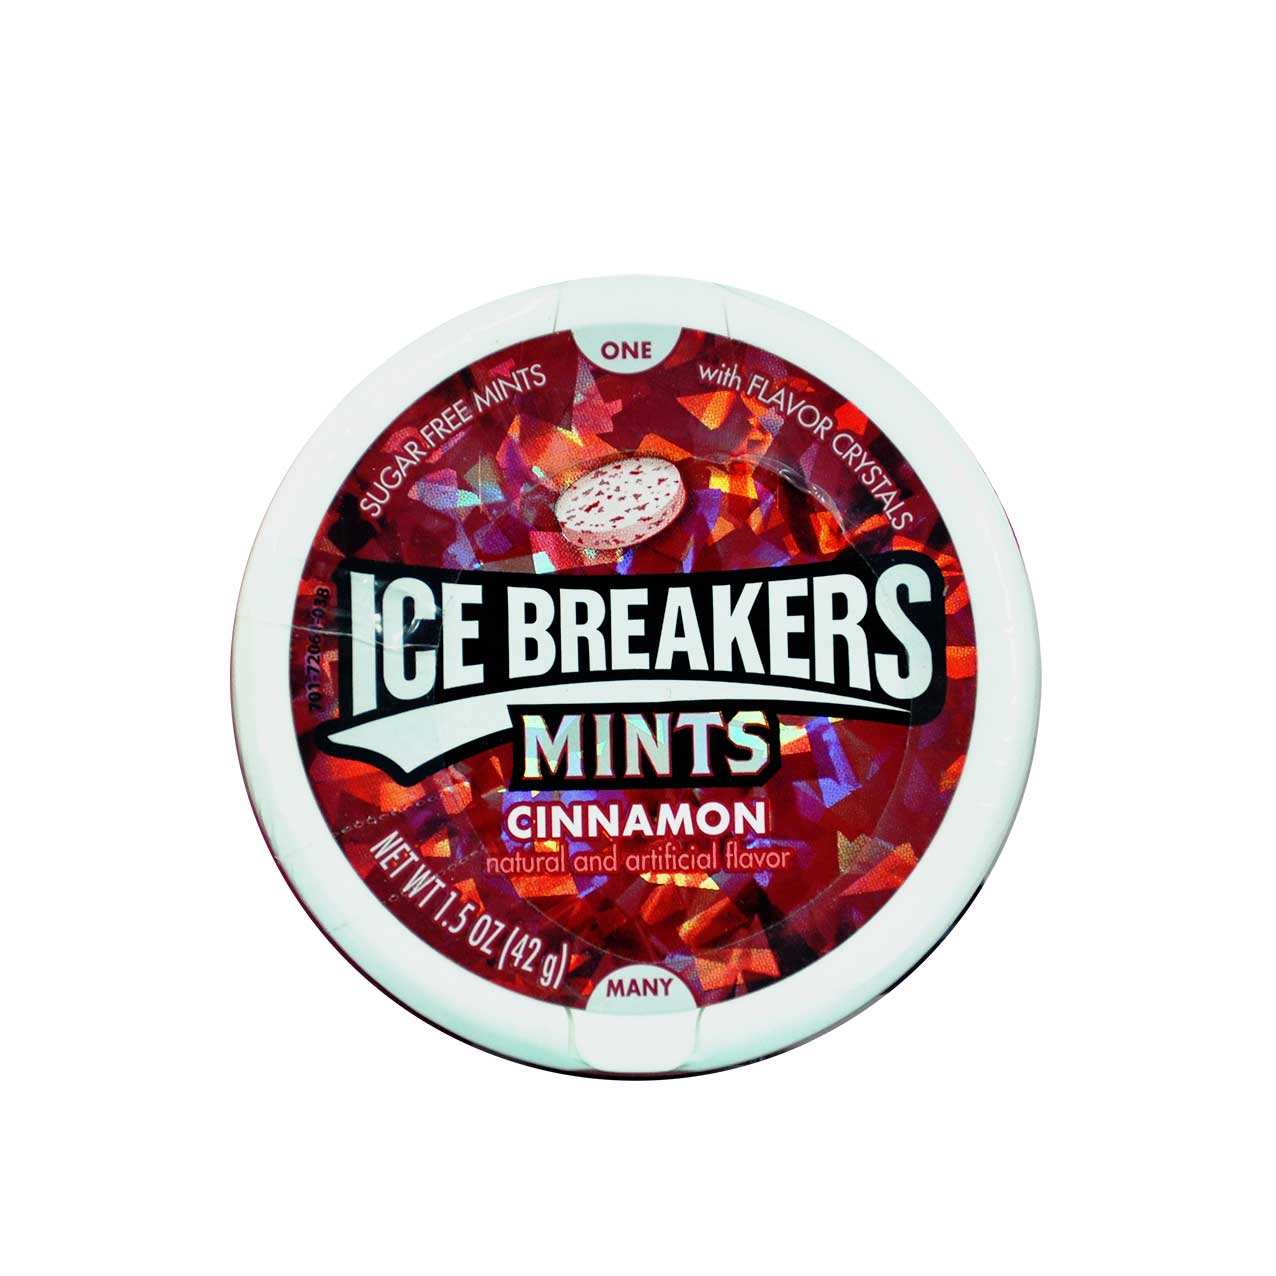  آبنبات دارچین (بدون شکر ) آیس بریکرز – ice breakers